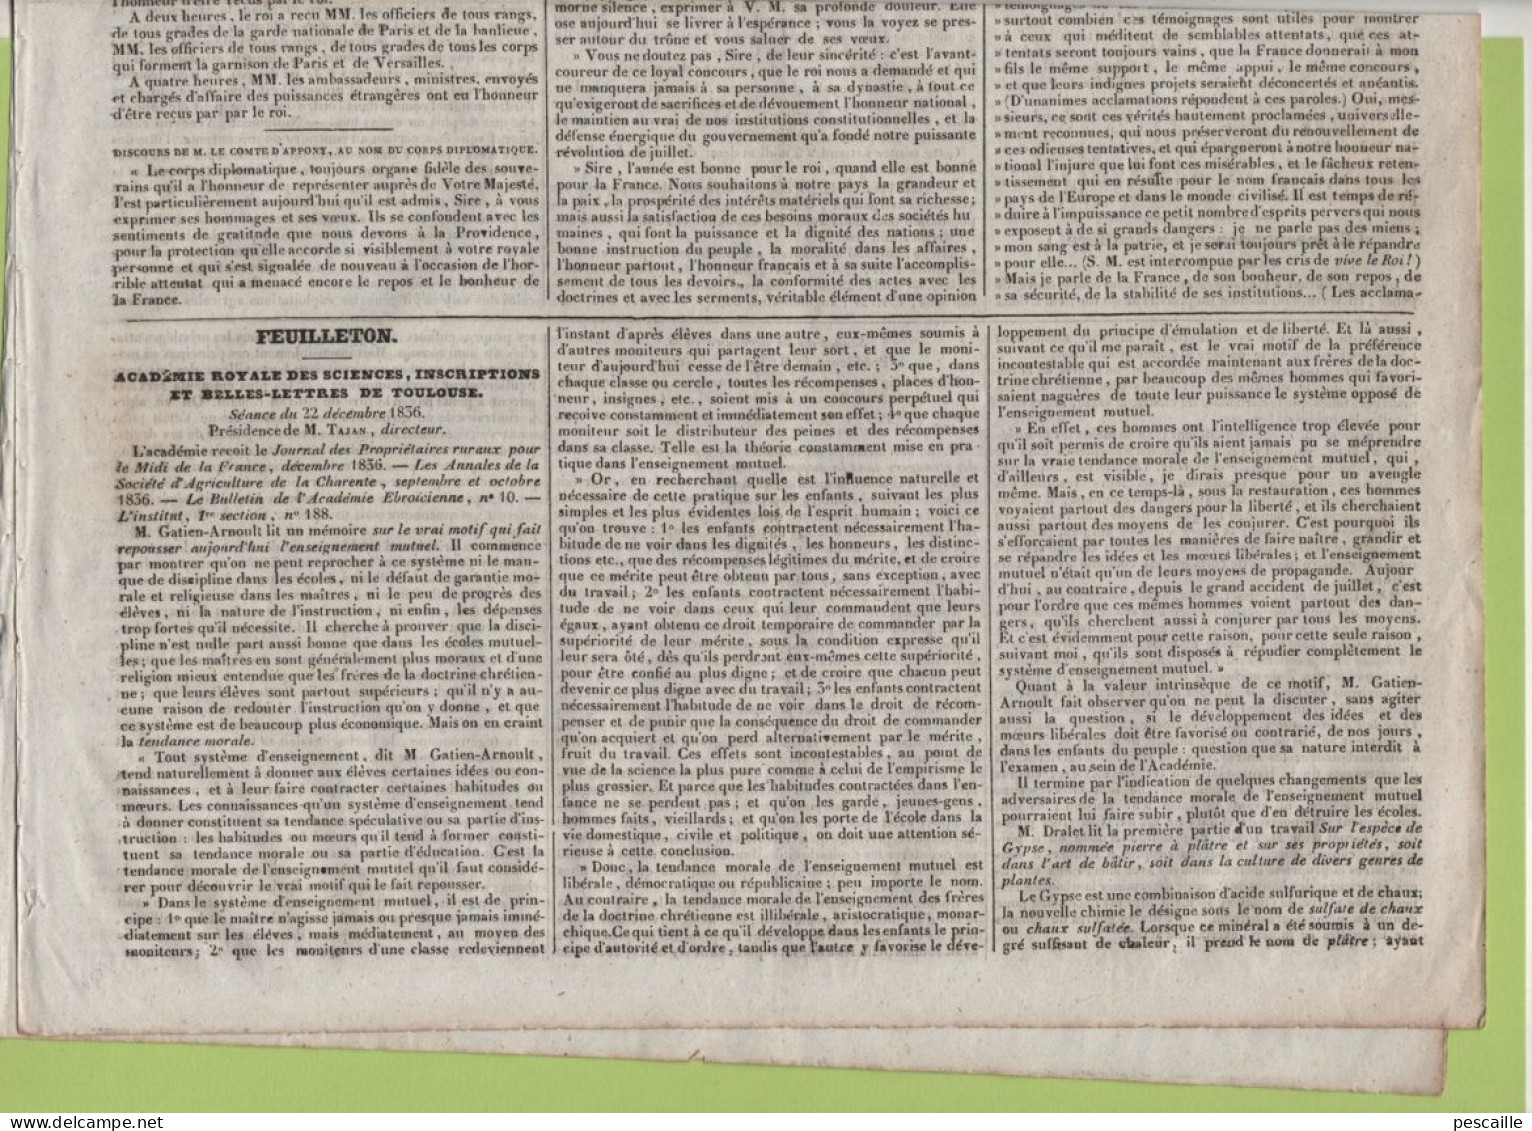 JOURNAL POLITIQUE DE TOULOUSE 07 01 1837 - ACADEMIE DES SCIENCES TOULOUSE - DISCOURS AU ROI - RIVIERES & CANAUX LATERAUX - 1800 - 1849